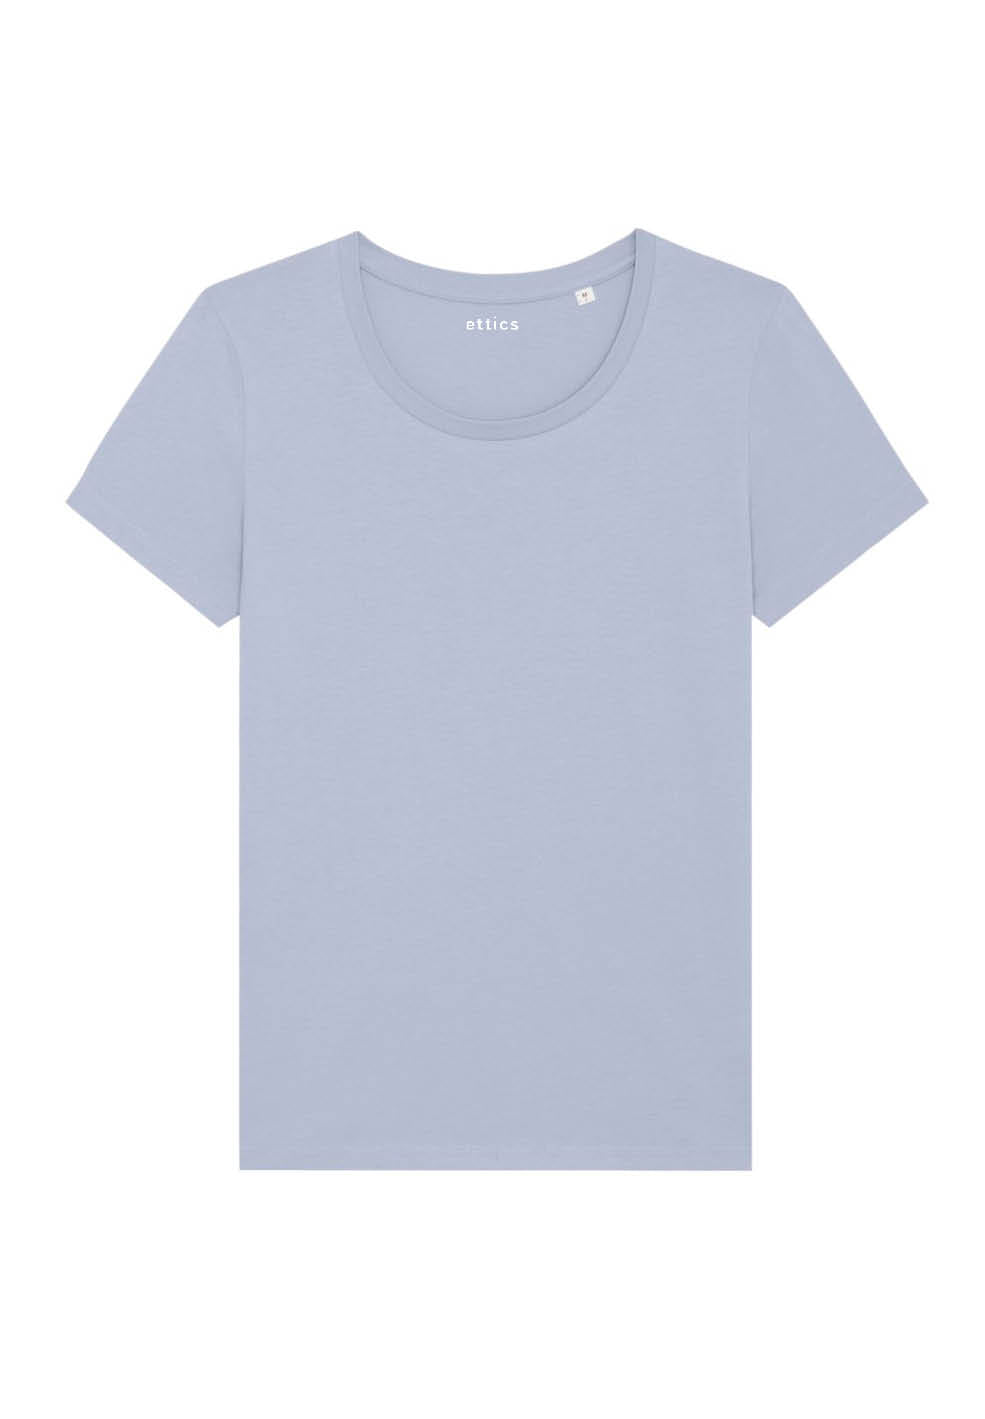 expresser serene blue t-shirt